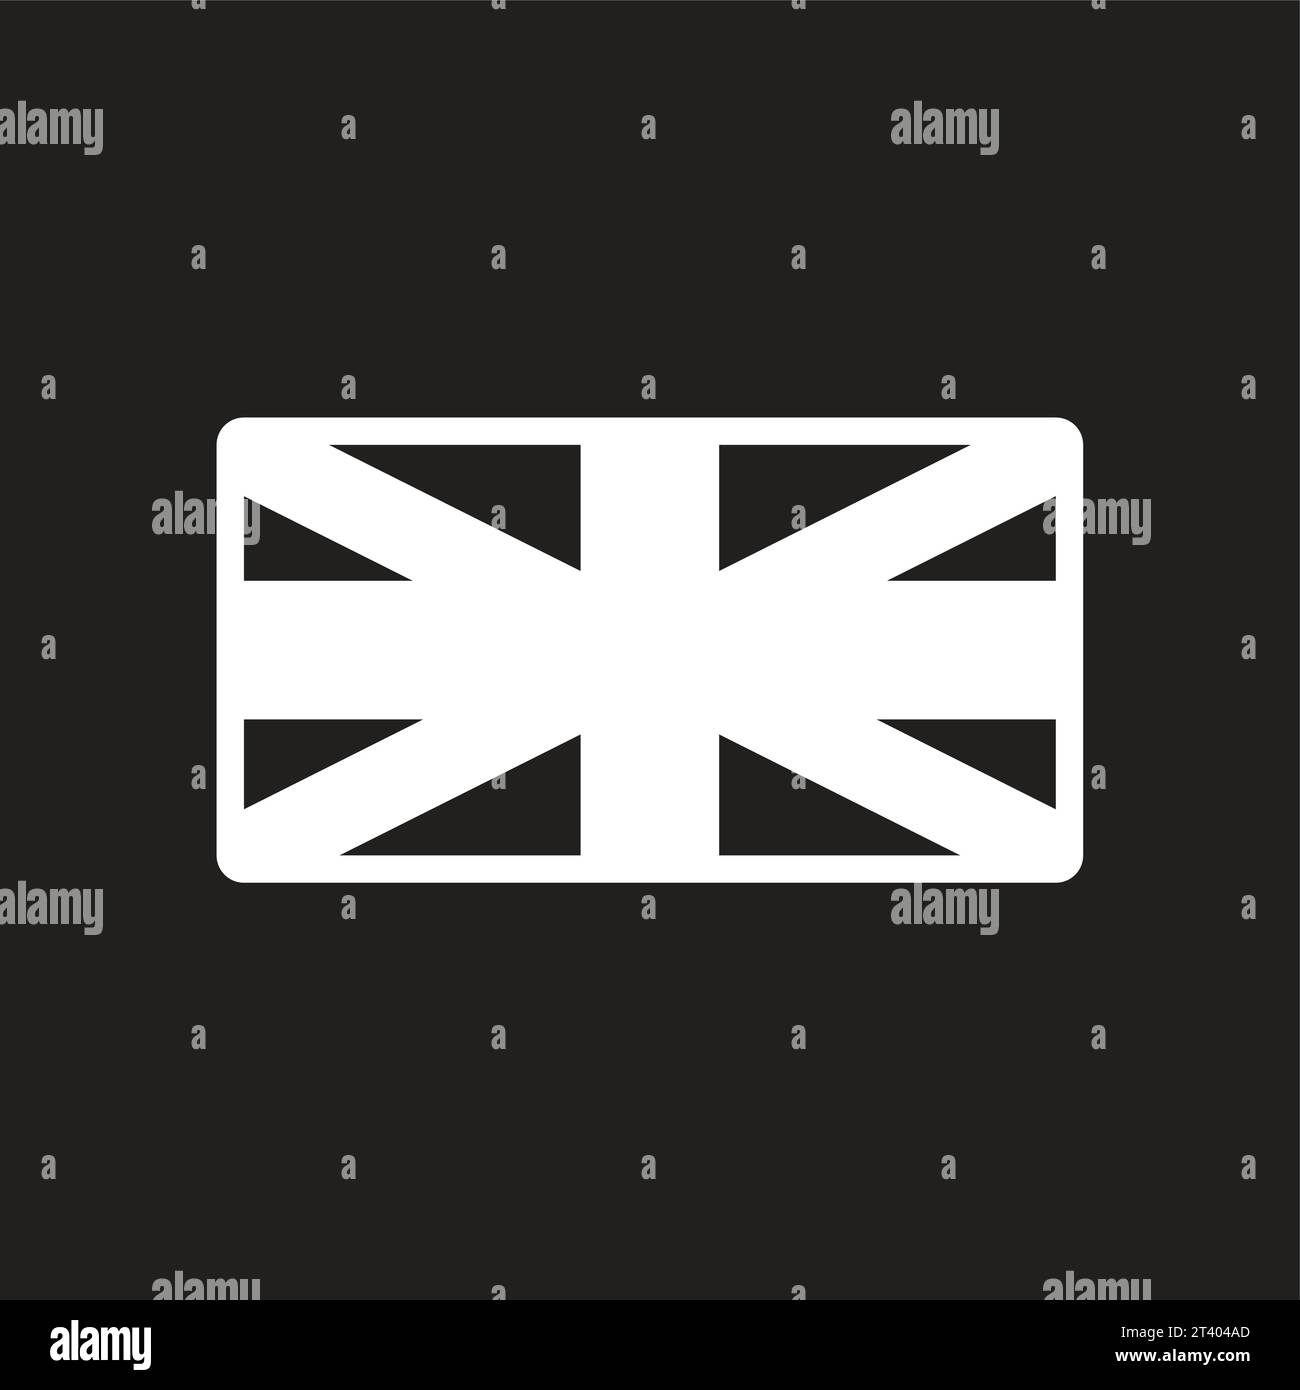 Union jack flag british english Black and White Stock Photos & Images ...